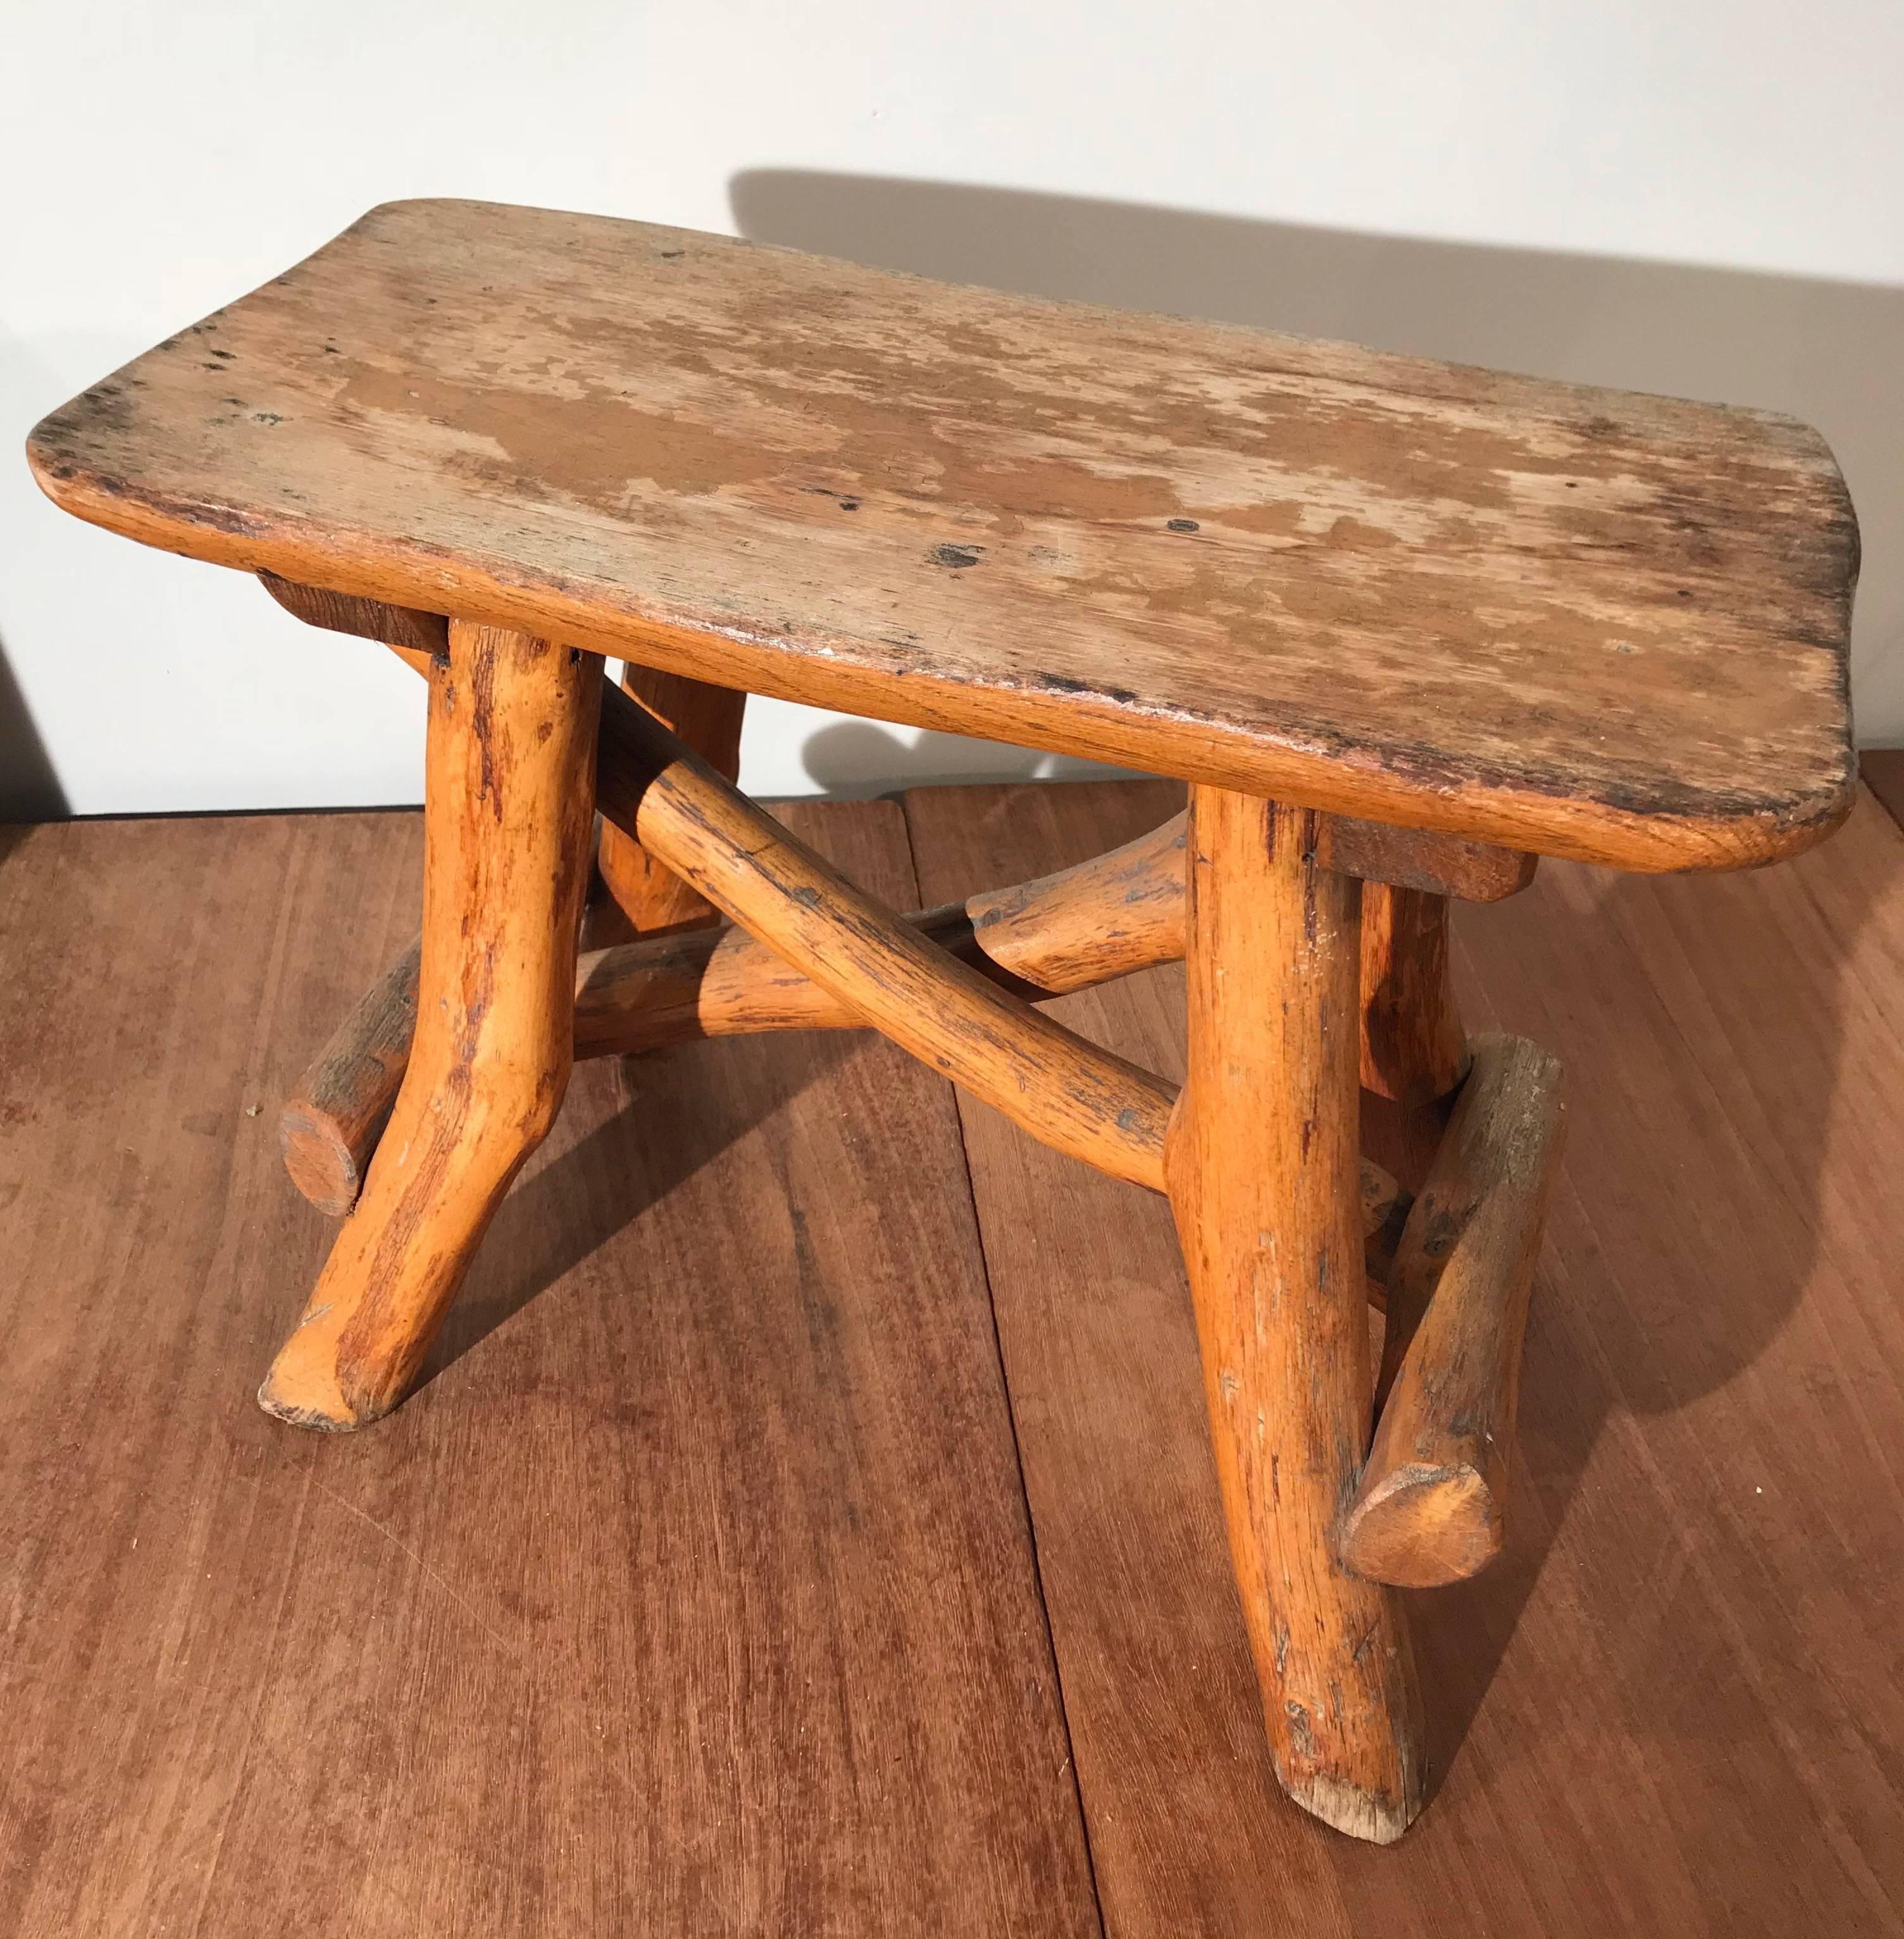 Hochwertig gefertigter und schwerer kleiner Hocker aus Eichenholzzweigen.

Dieser rustikale und absolut originelle Hocker oder Tisch ist aus natürlichen Ästen gefertigt und stammt aus den frühen 1900er Jahren. Das Aussehen und die Haptik dieses